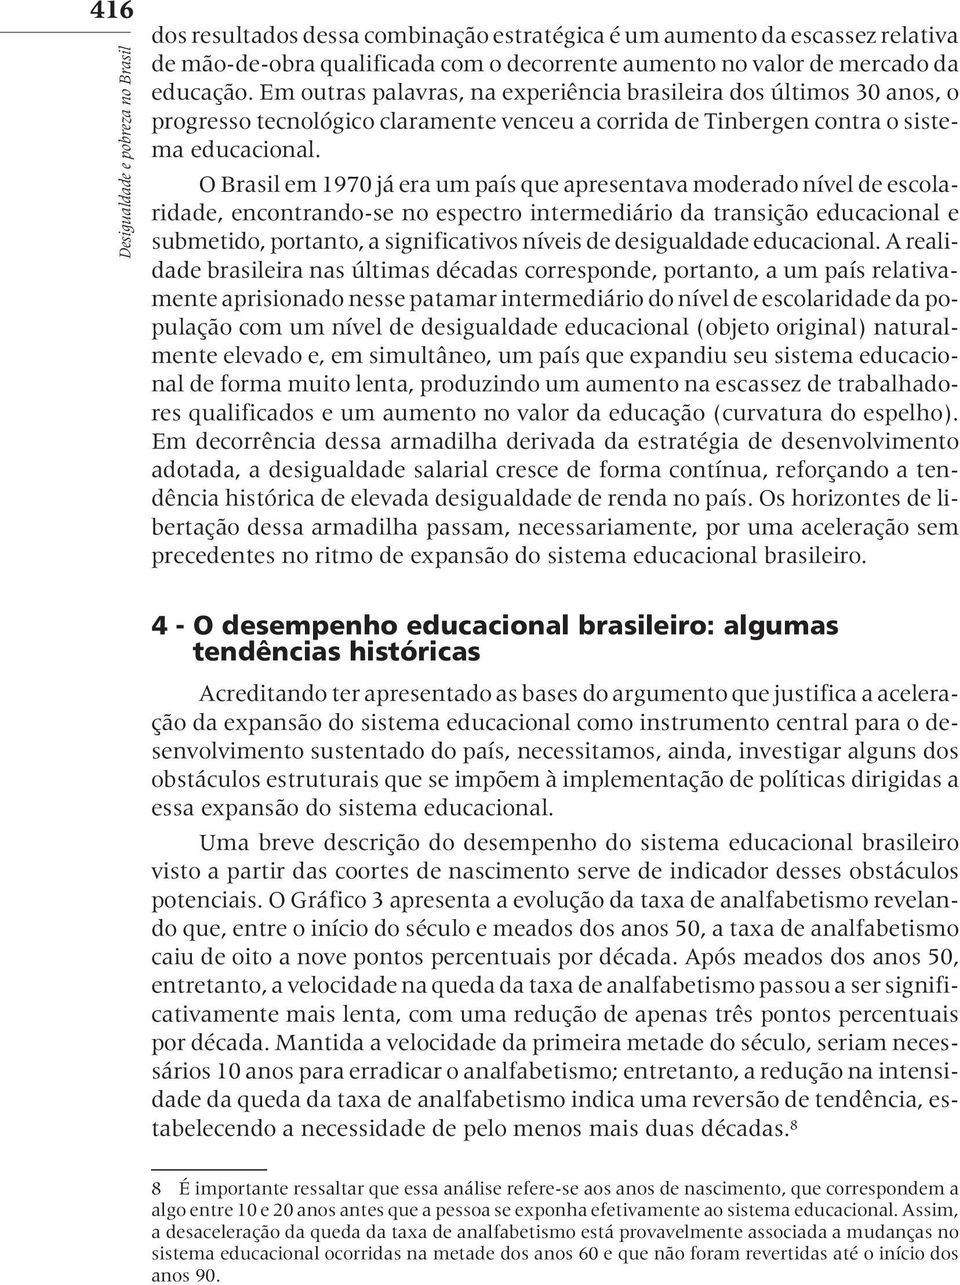 O Brasil em 1970 já era um país que apresentava moderado nível de escolaridade, encontrando-se no espectro intermediário da transição educacional e submetido, portanto, a significativos níveis de